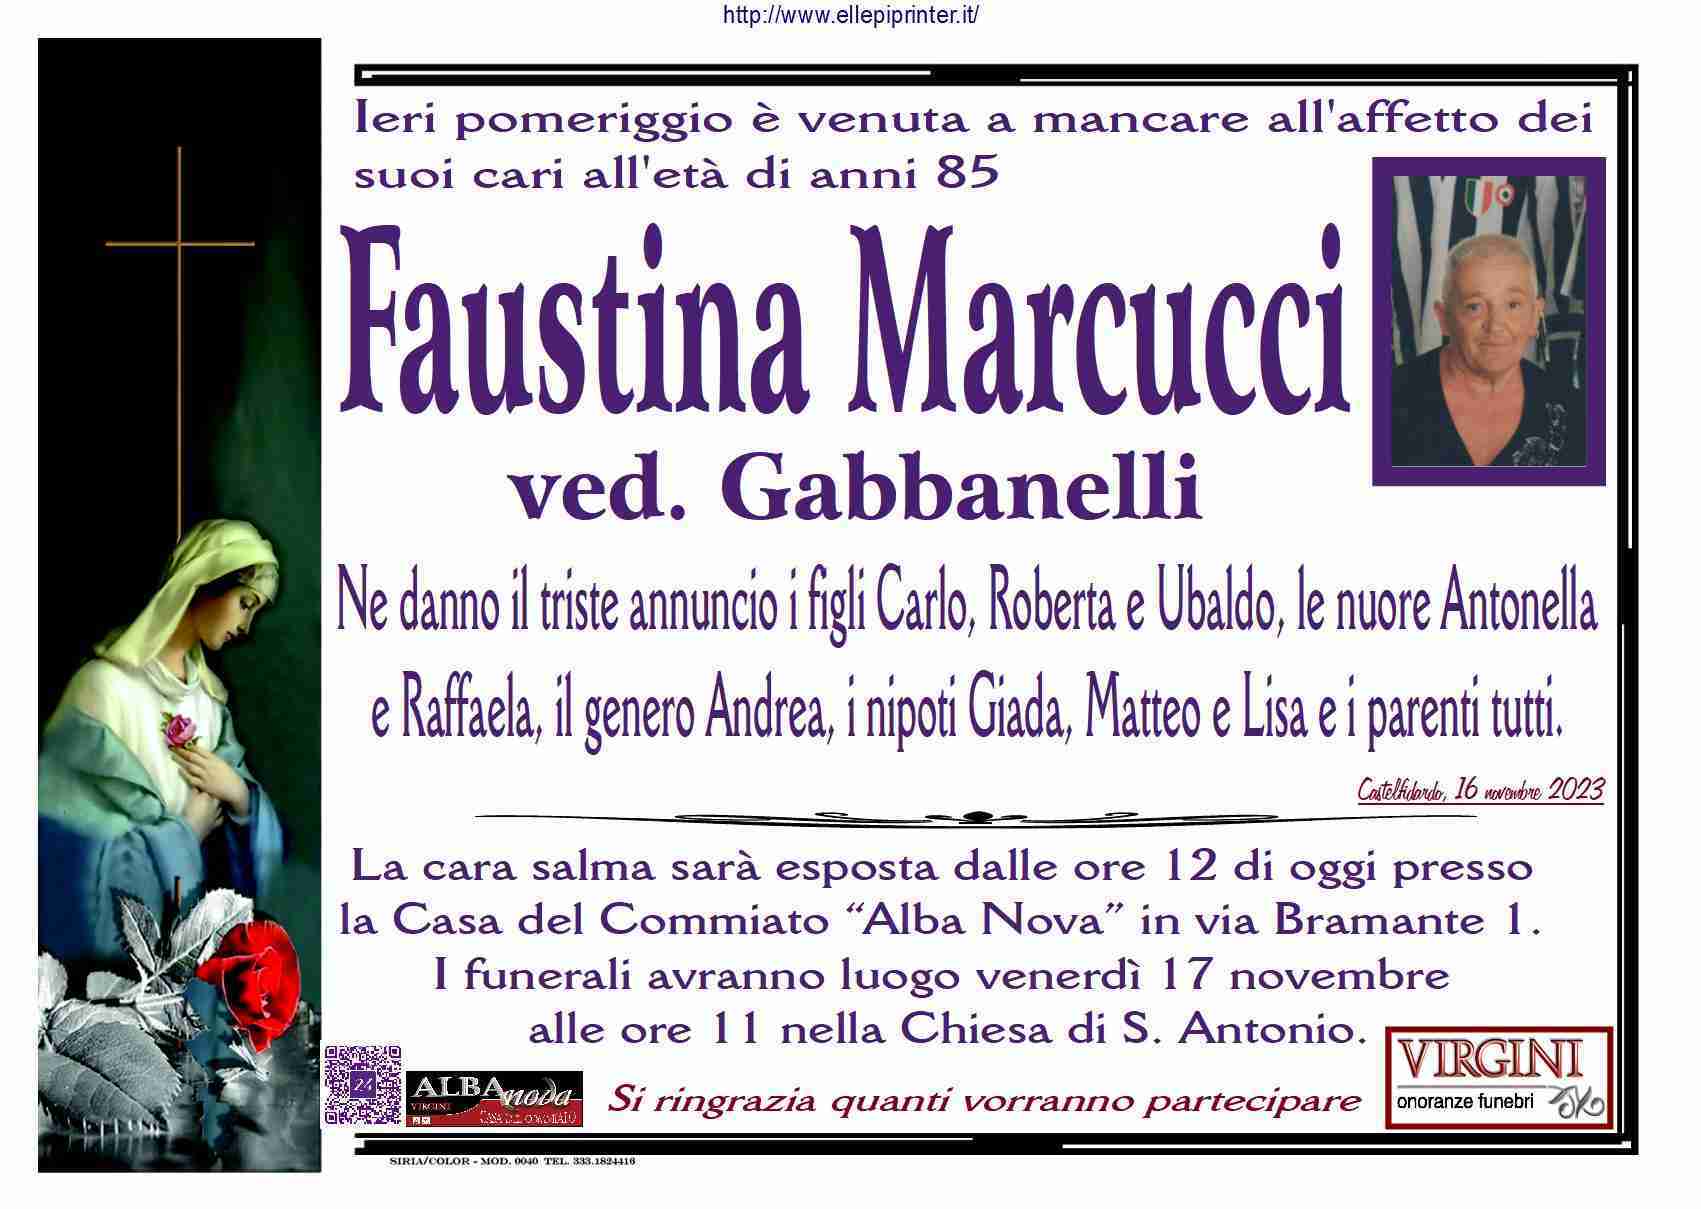 Faustina Marcucci